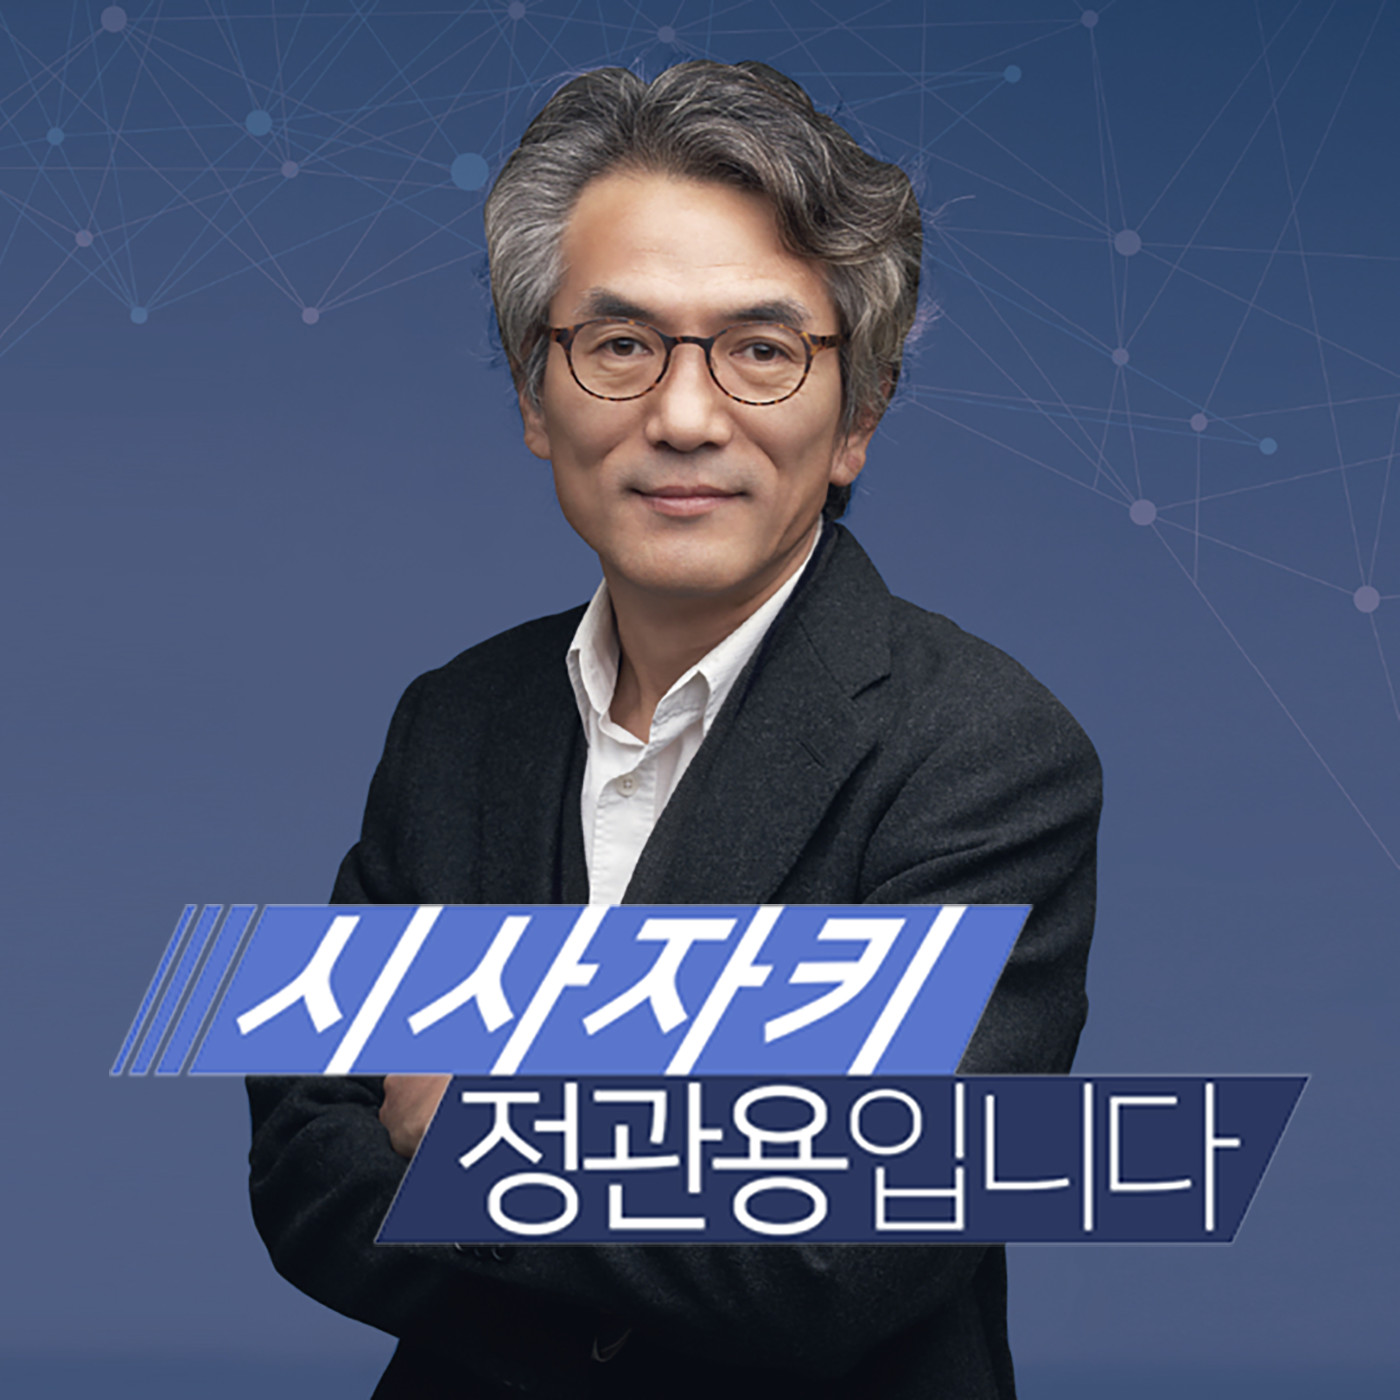 [20/02/14] 장유정 감독 "'정직한 후보', 총선 나선 분들도 보셨으면" - 장유정 '정직한 후보' 감독